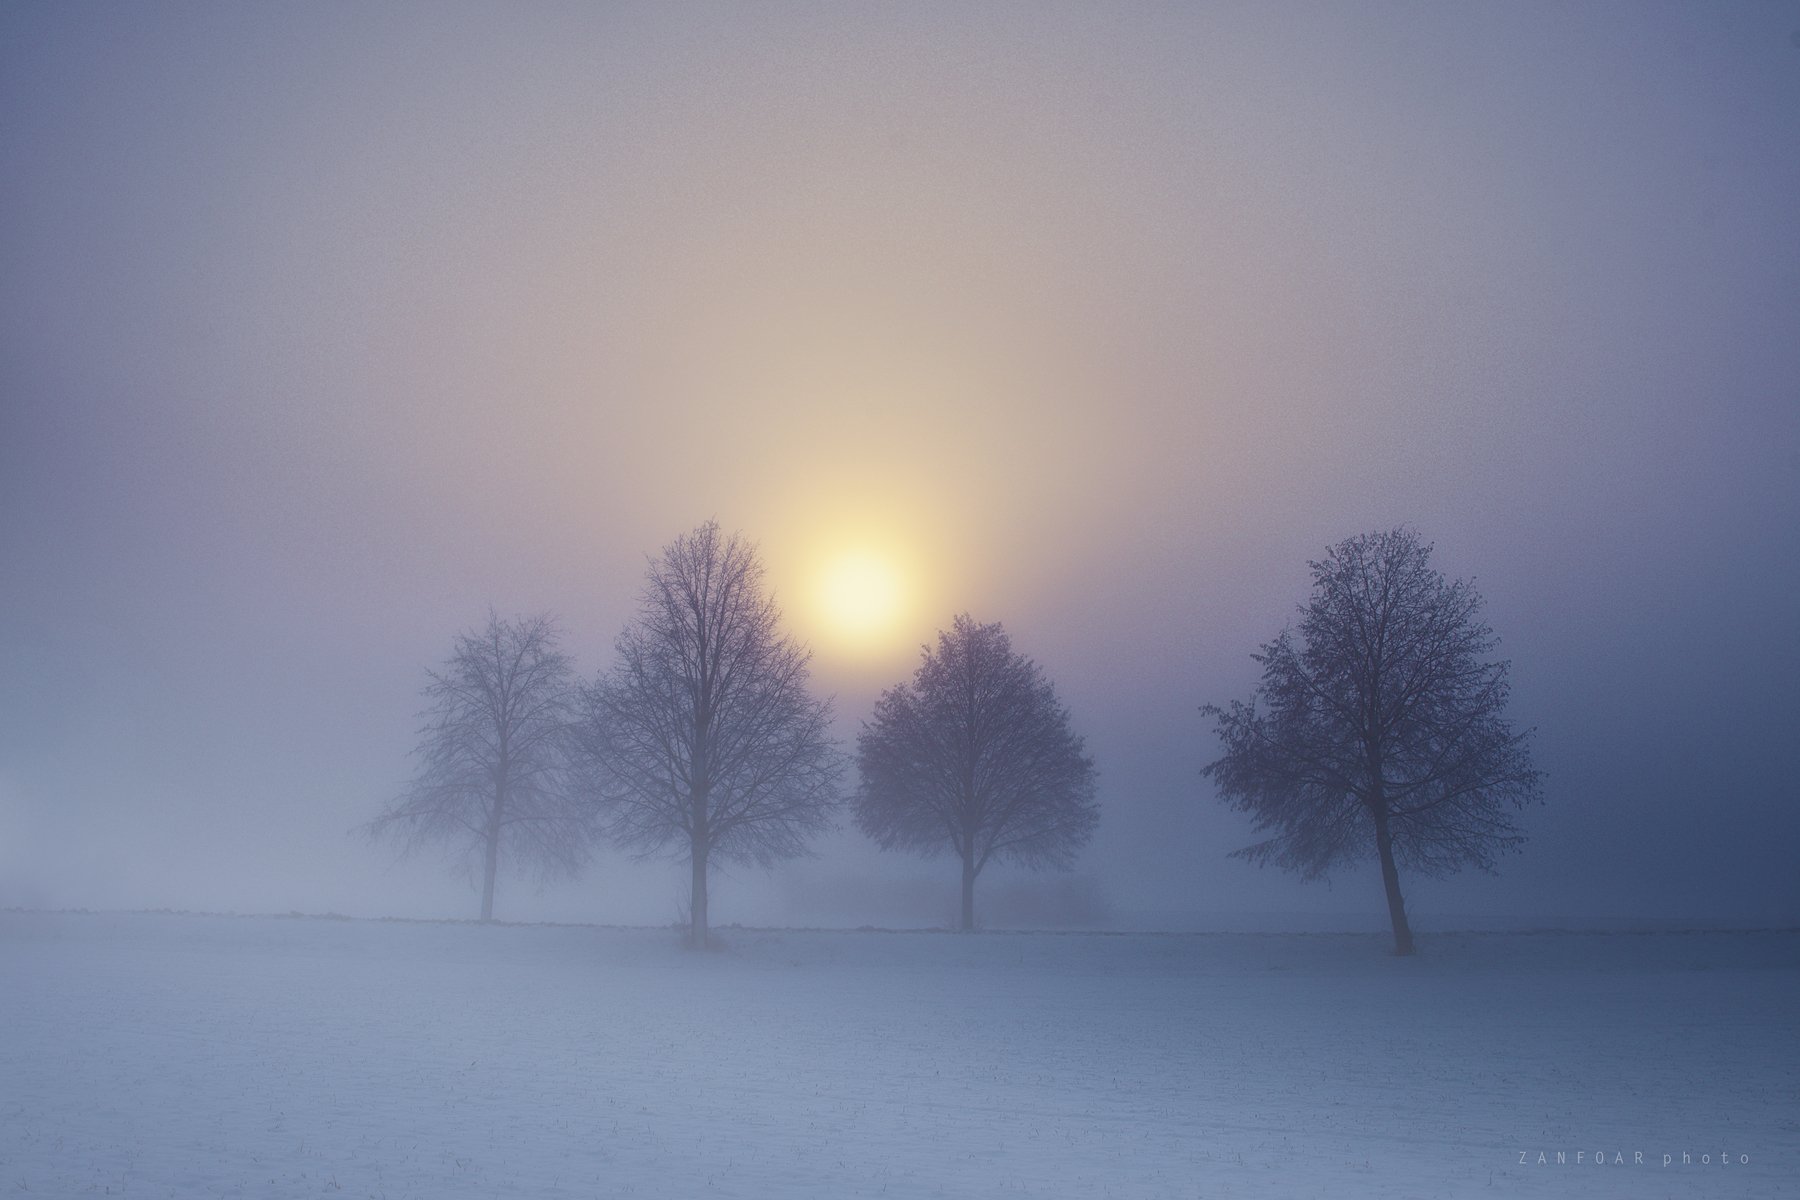 туман,fog,misty,haze,ice,snow,winter,zanfoar,czech republic,nikon d750,чехия, Zanfoar